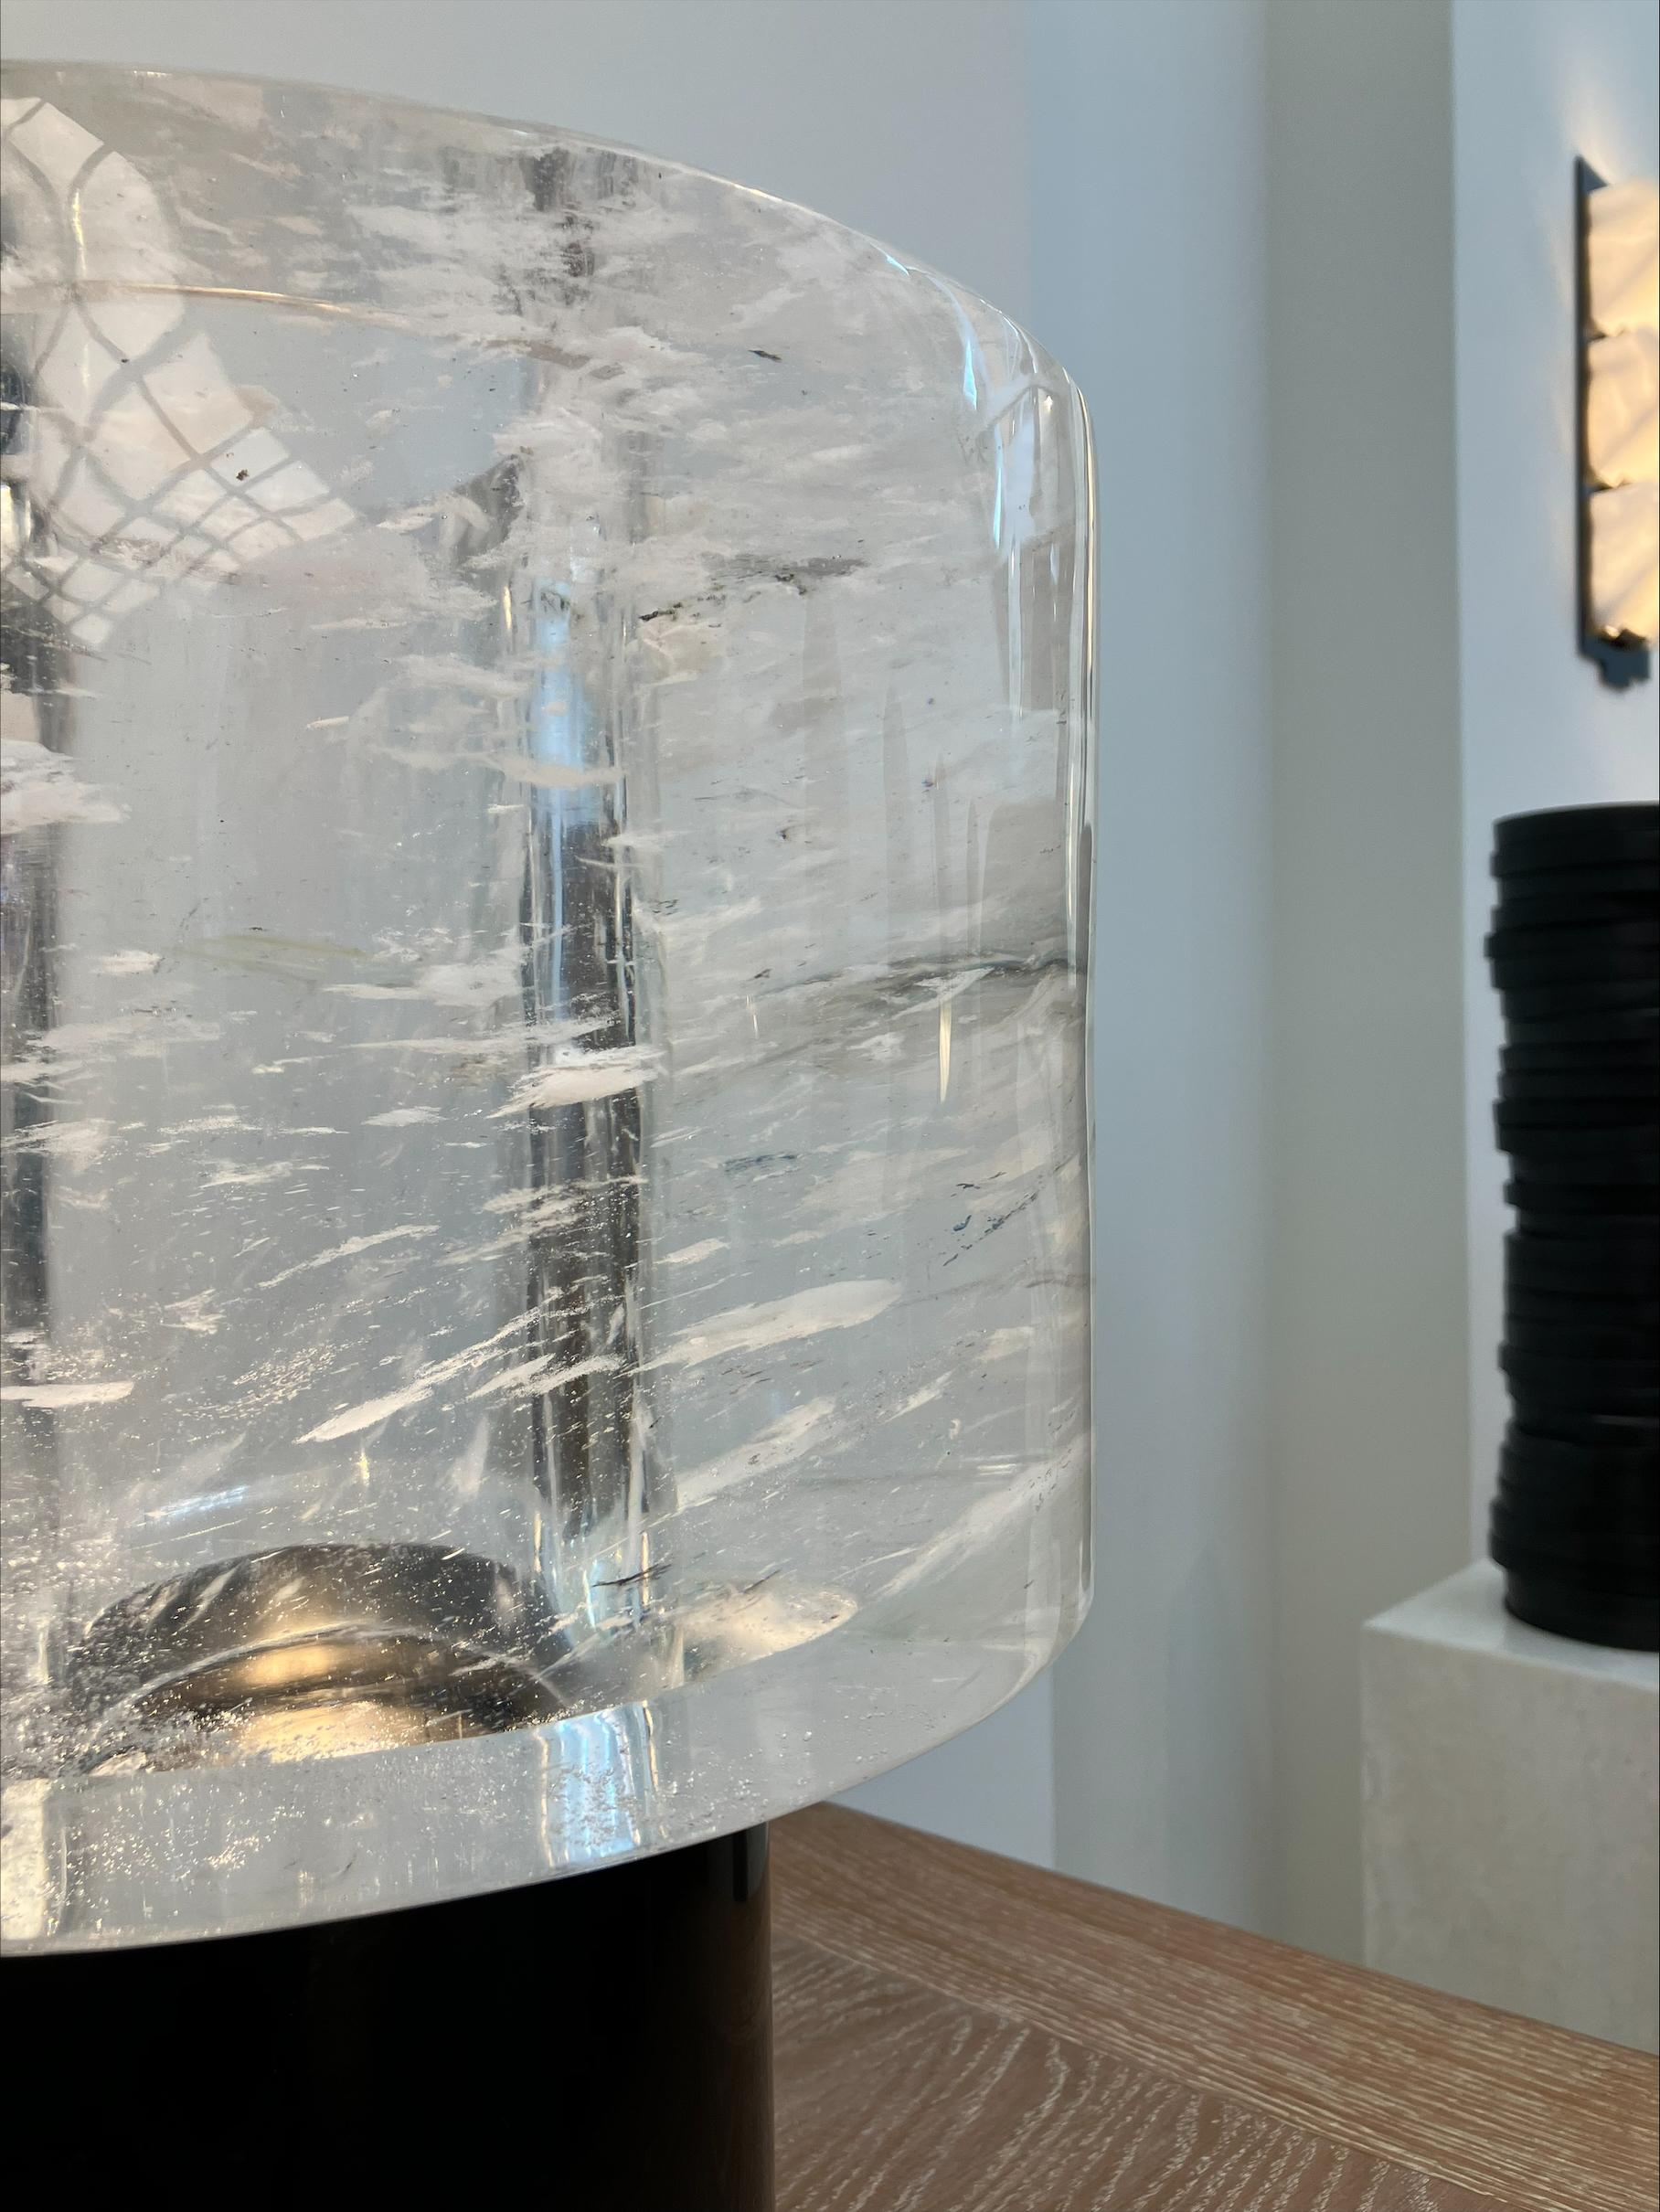 Belle, élégante et saisissante. Cette lampe à poser de Gilles Caffier est une belle pièce de design, qui produit une lumière douce et s'adapte à de nombreux espaces.

